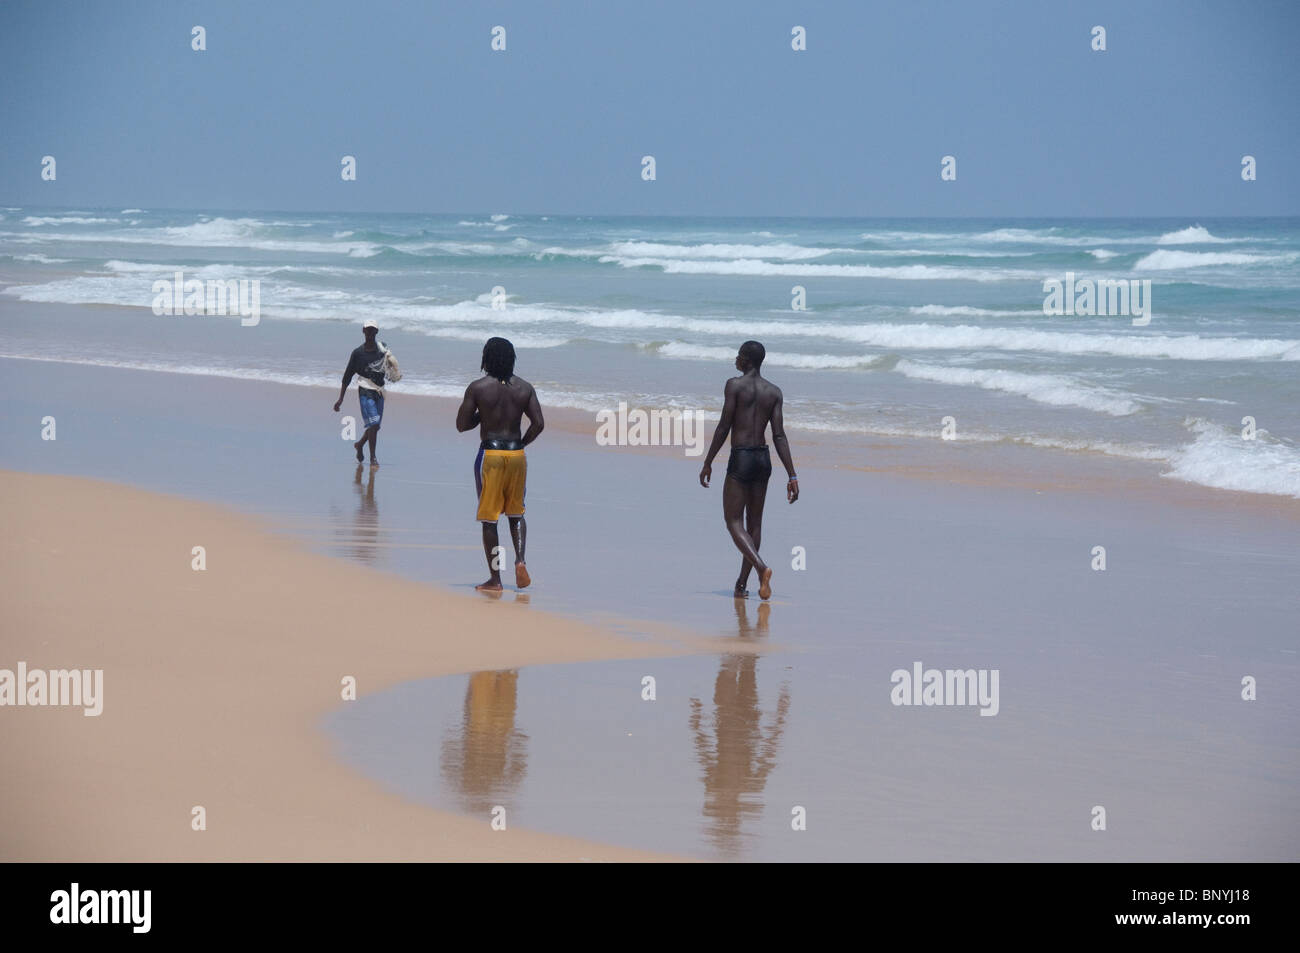 Afrique, Sénégal, Dakar. Explorer les dunes de sable et la plage autour du Lac Rose de Retba. Plage de l'Atlantique. Banque D'Images